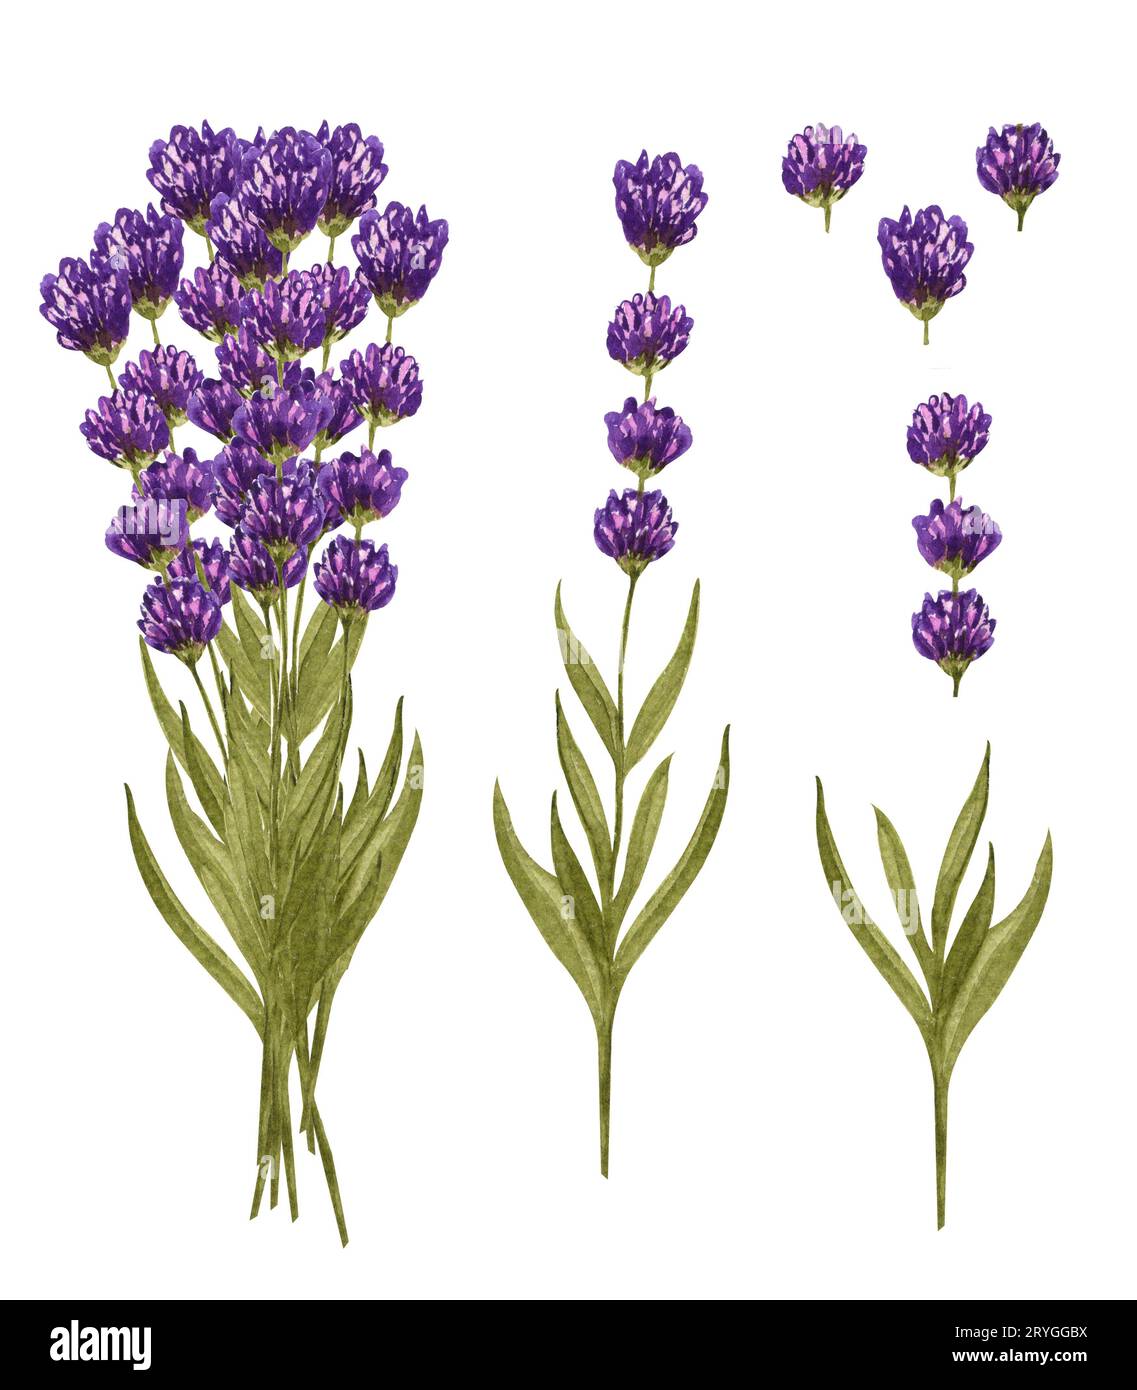 Lavendelstrauß in Aquarellfarben und einzelne Lavendelblüten. Handgezeichnetes Blumenset isoliert auf weiß. Honigkraut Stockfoto